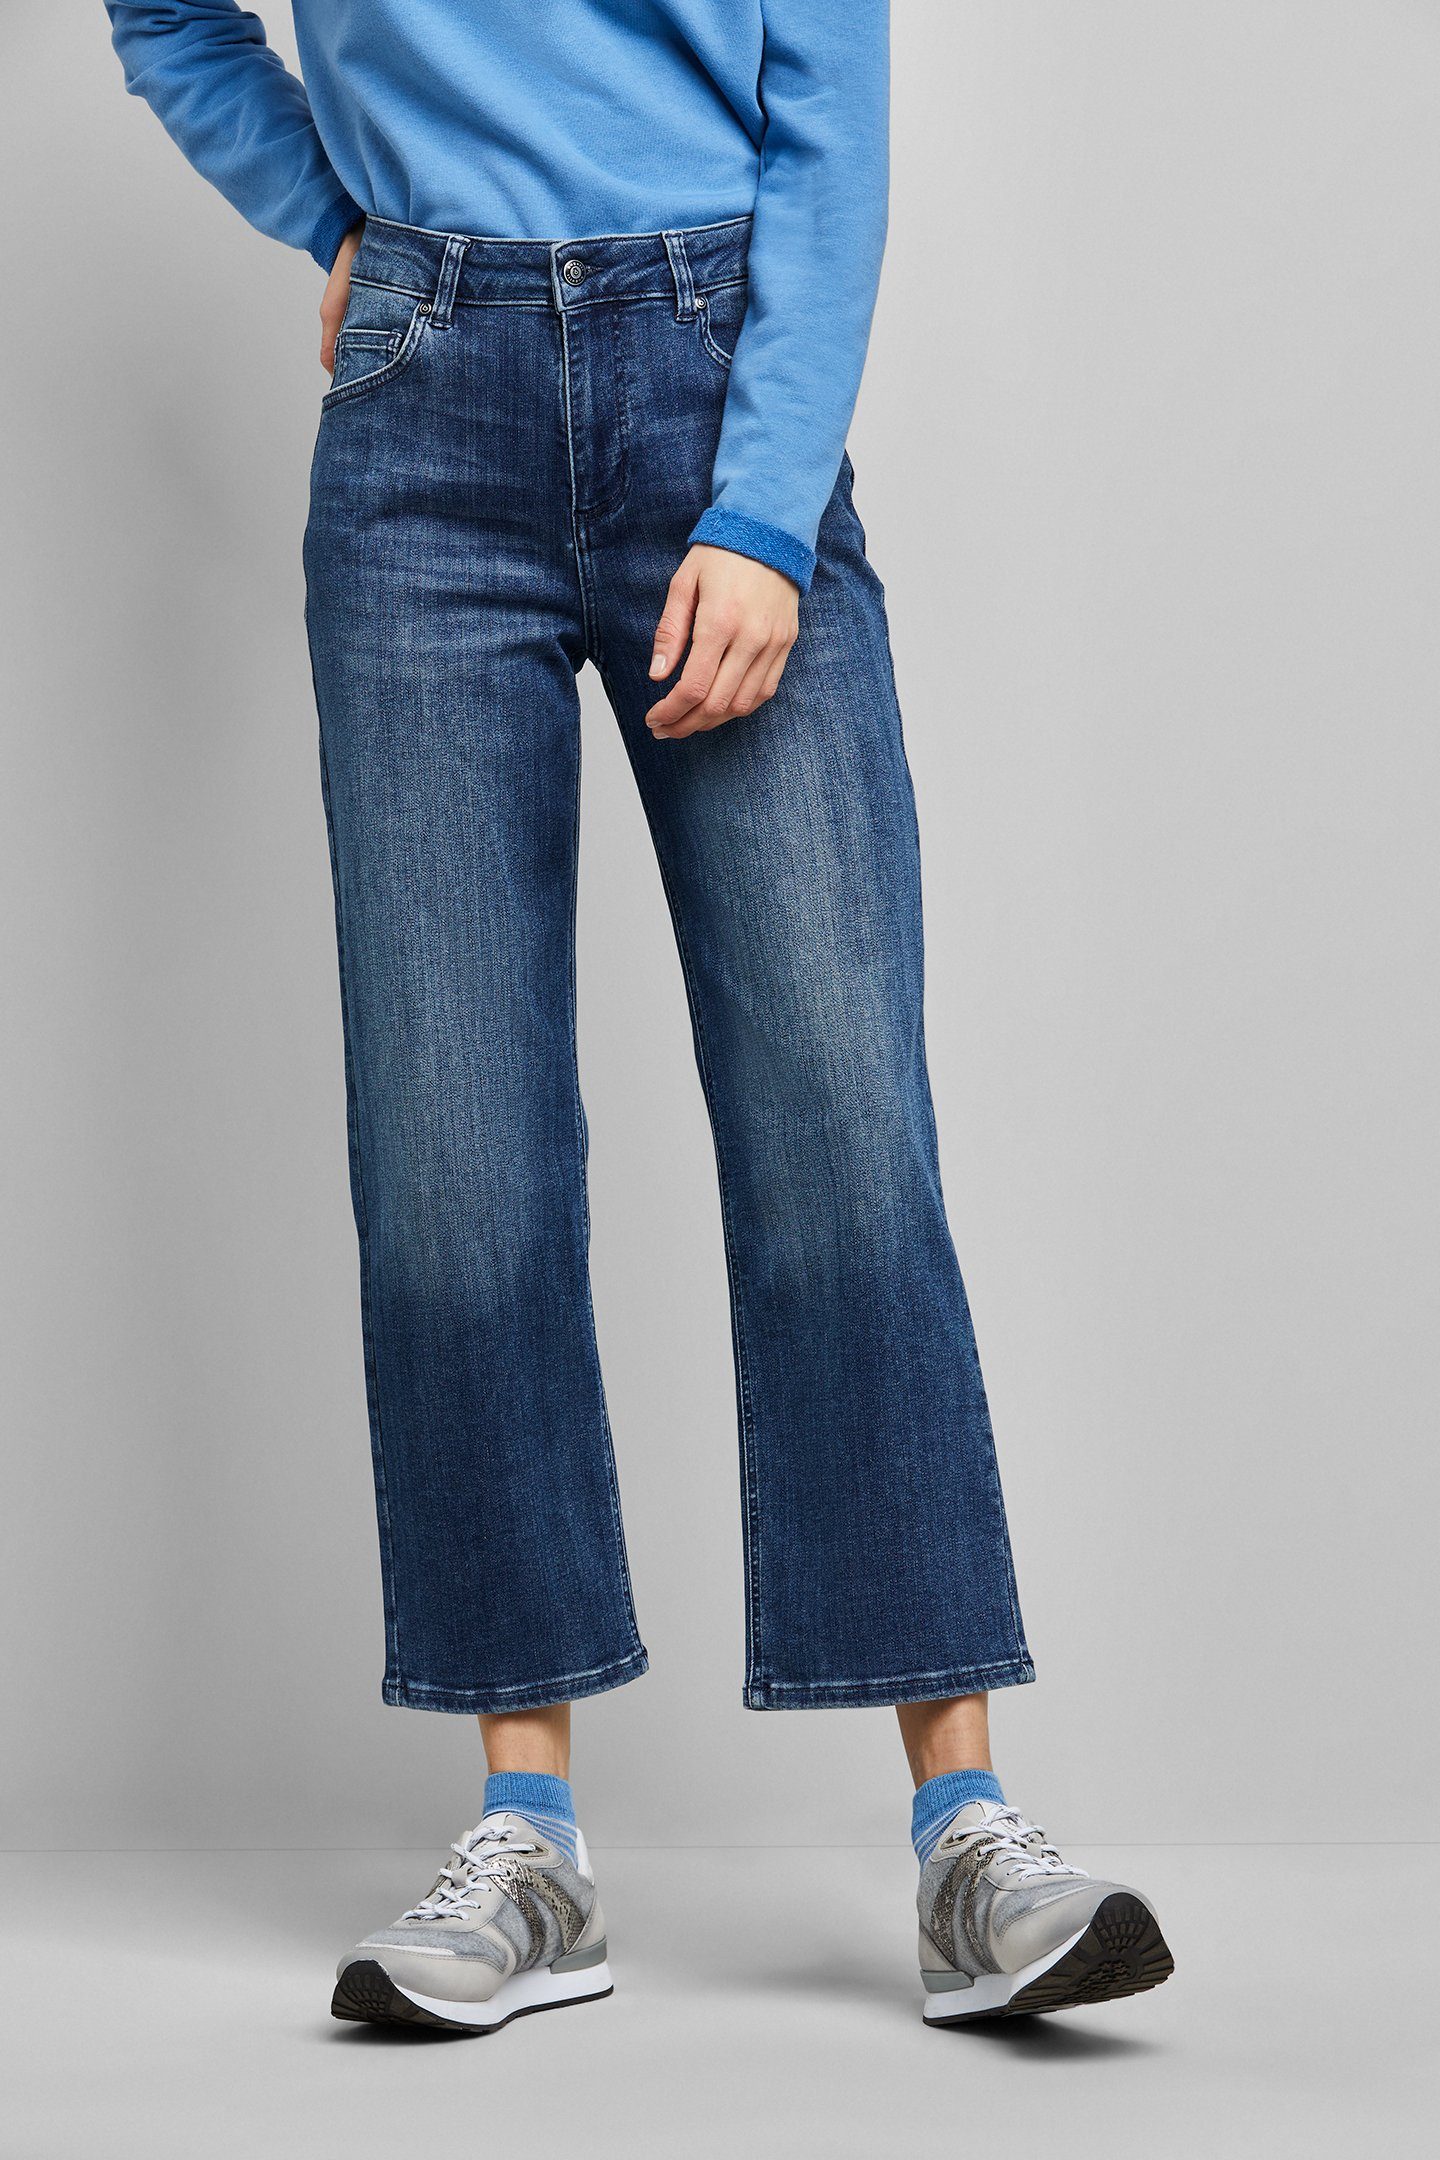 Fit in bugatti aus Relax elastischer 5-Pocket-Jeans Baumwollware